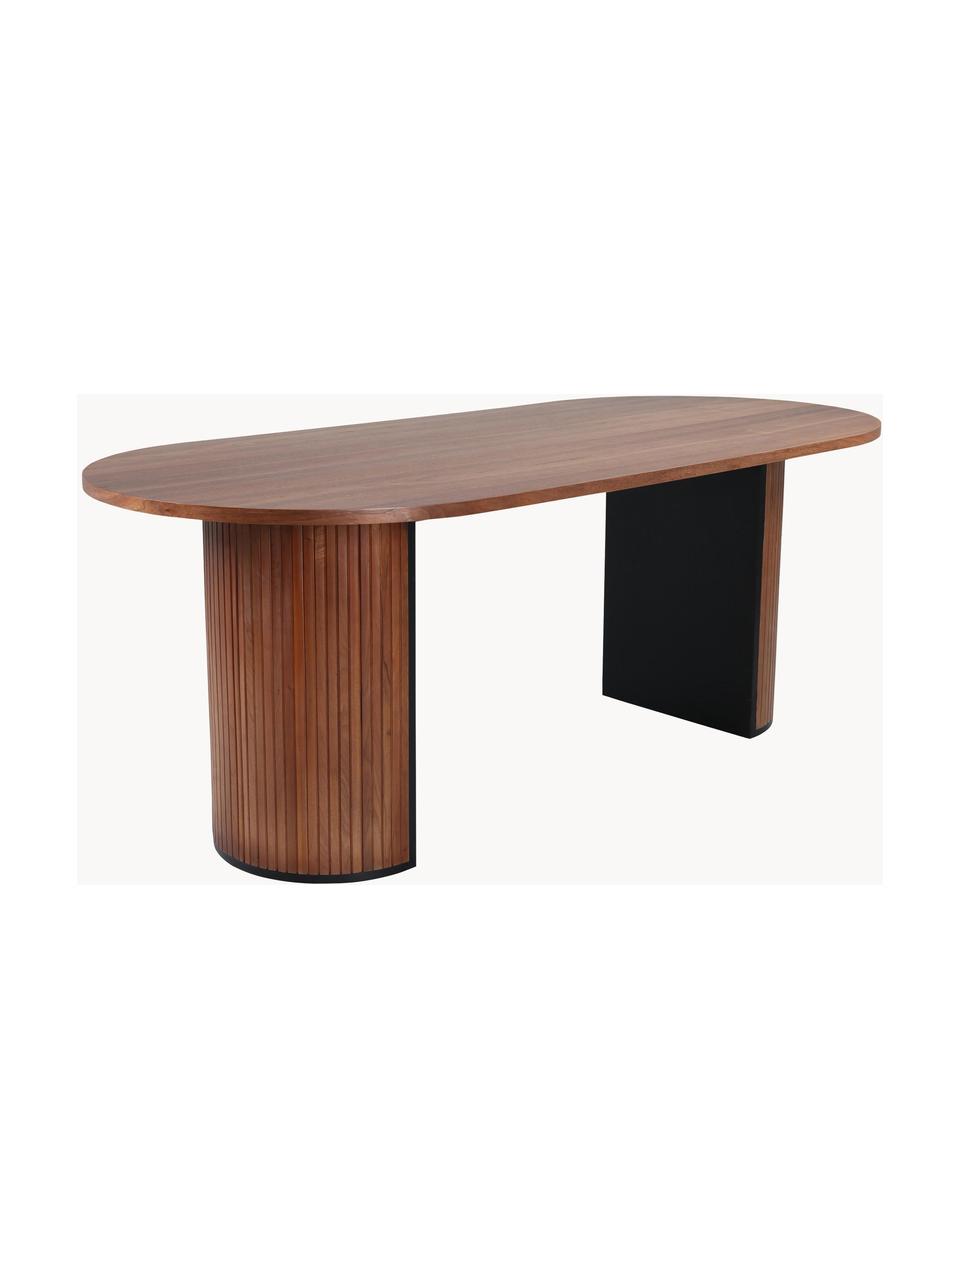 Oválny drevený jedálenský stôl Bianca, 200 x 90 cm, Dubové drevo, s tmavým lakom, Š 200 x H 90 cm